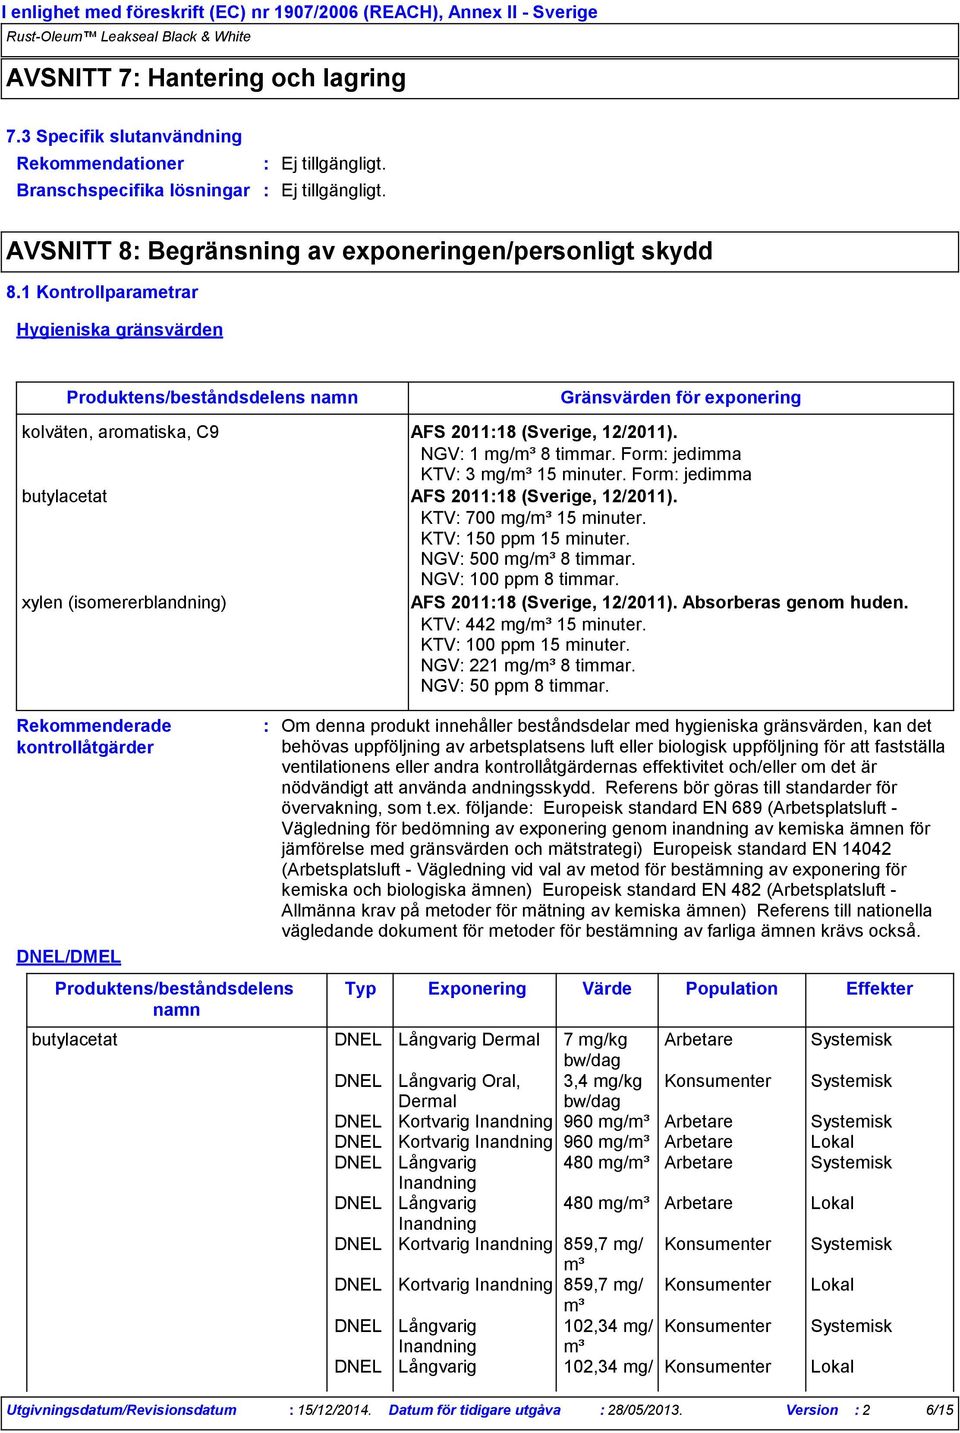 Form jedimma butylacetat AFS 201118 (Sverige, 12/2011). KTV 700 mg/m³ 15 minuter. KTV 150 ppm 15 minuter. NGV 500 mg/m³ 8 timmar. NGV 100 ppm 8 timmar.